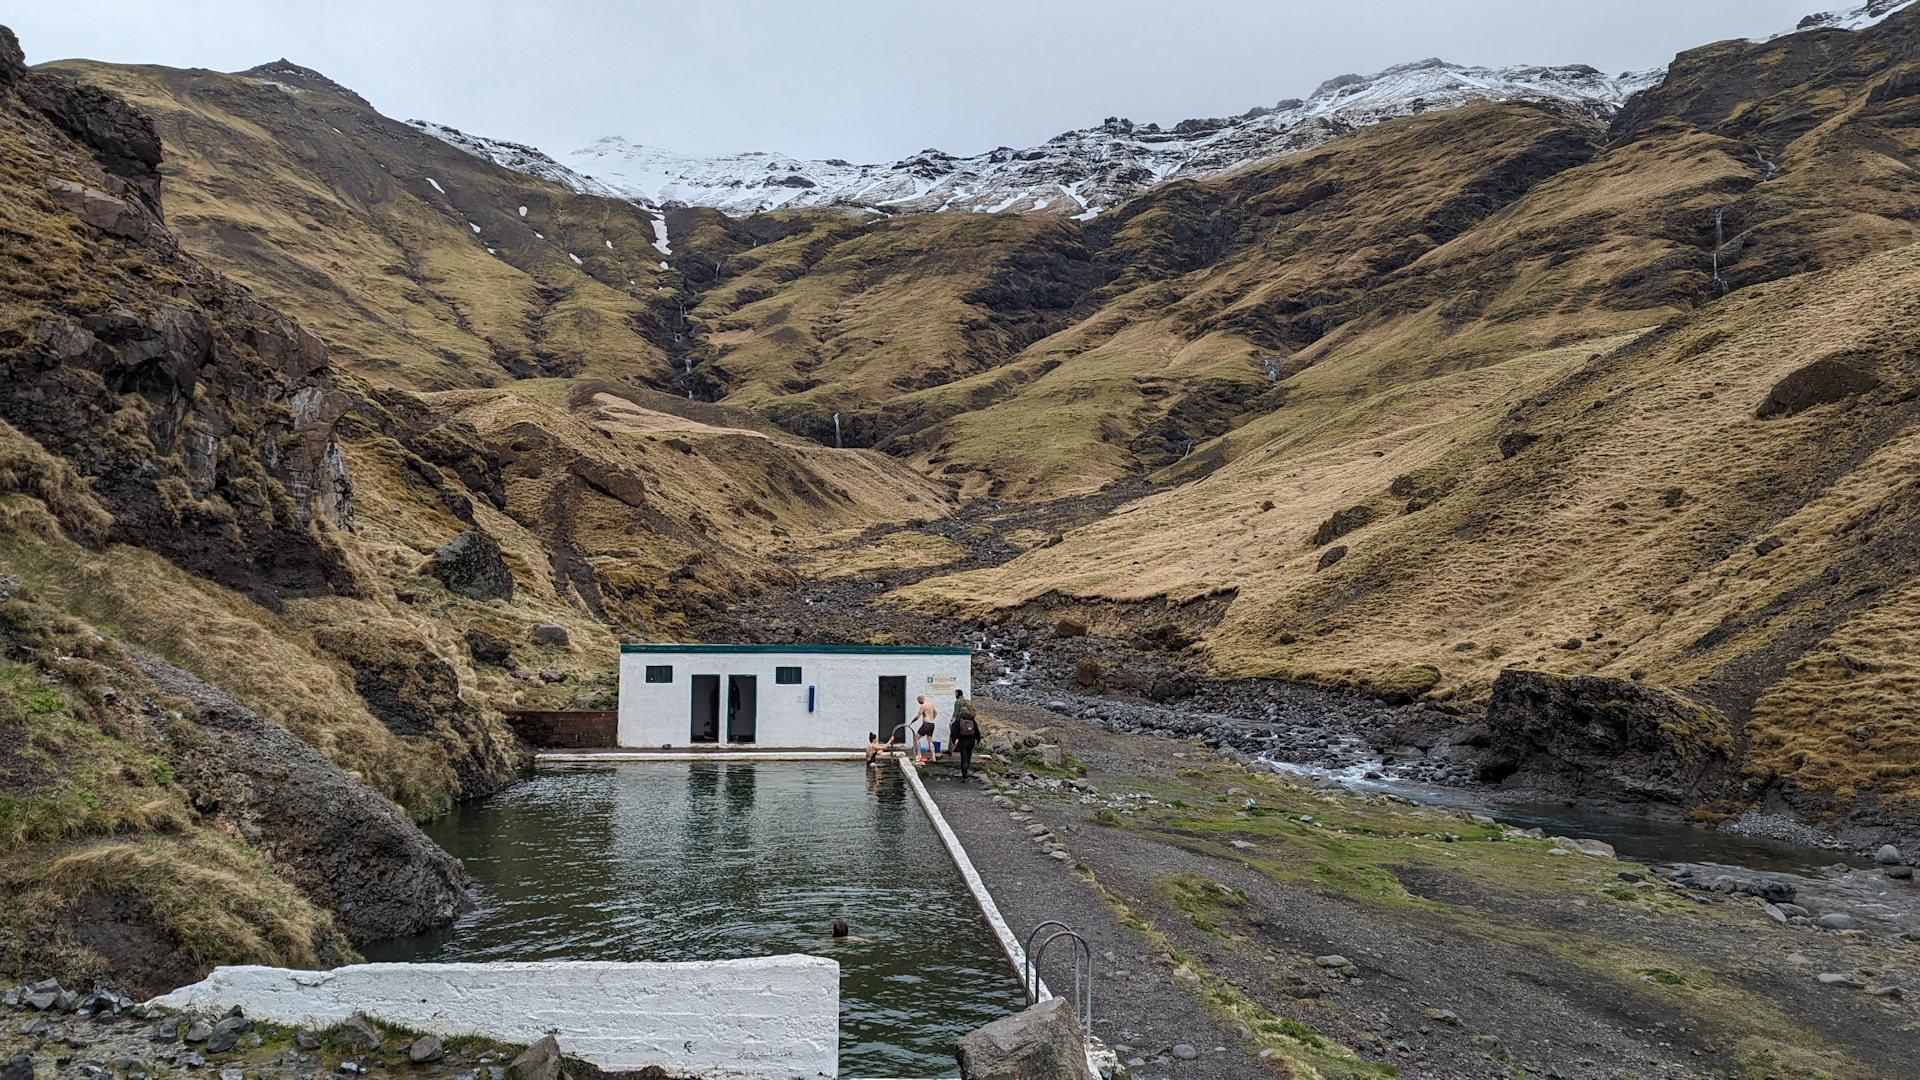 Seljavallalaug Island eingebettet in Berge mit schneebedeckten Spitzen